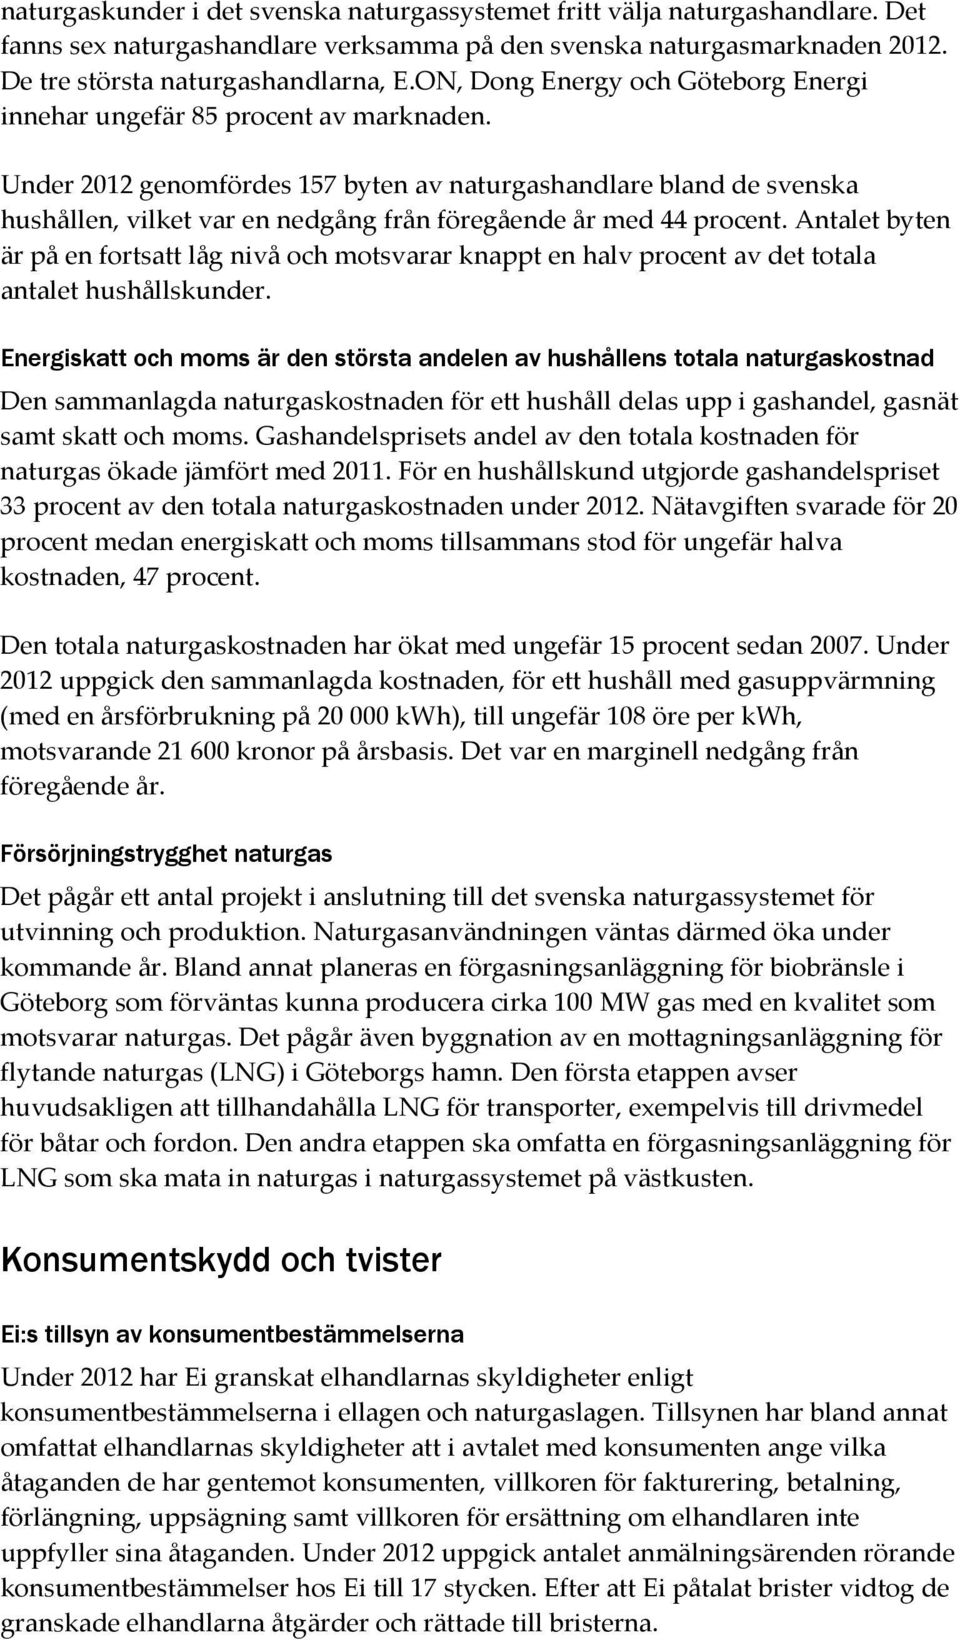 Under 2012 genomfördes 157 byten av naturgashandlare bland de svenska hushållen, vilket var en nedgång från föregående år med 44 procent.